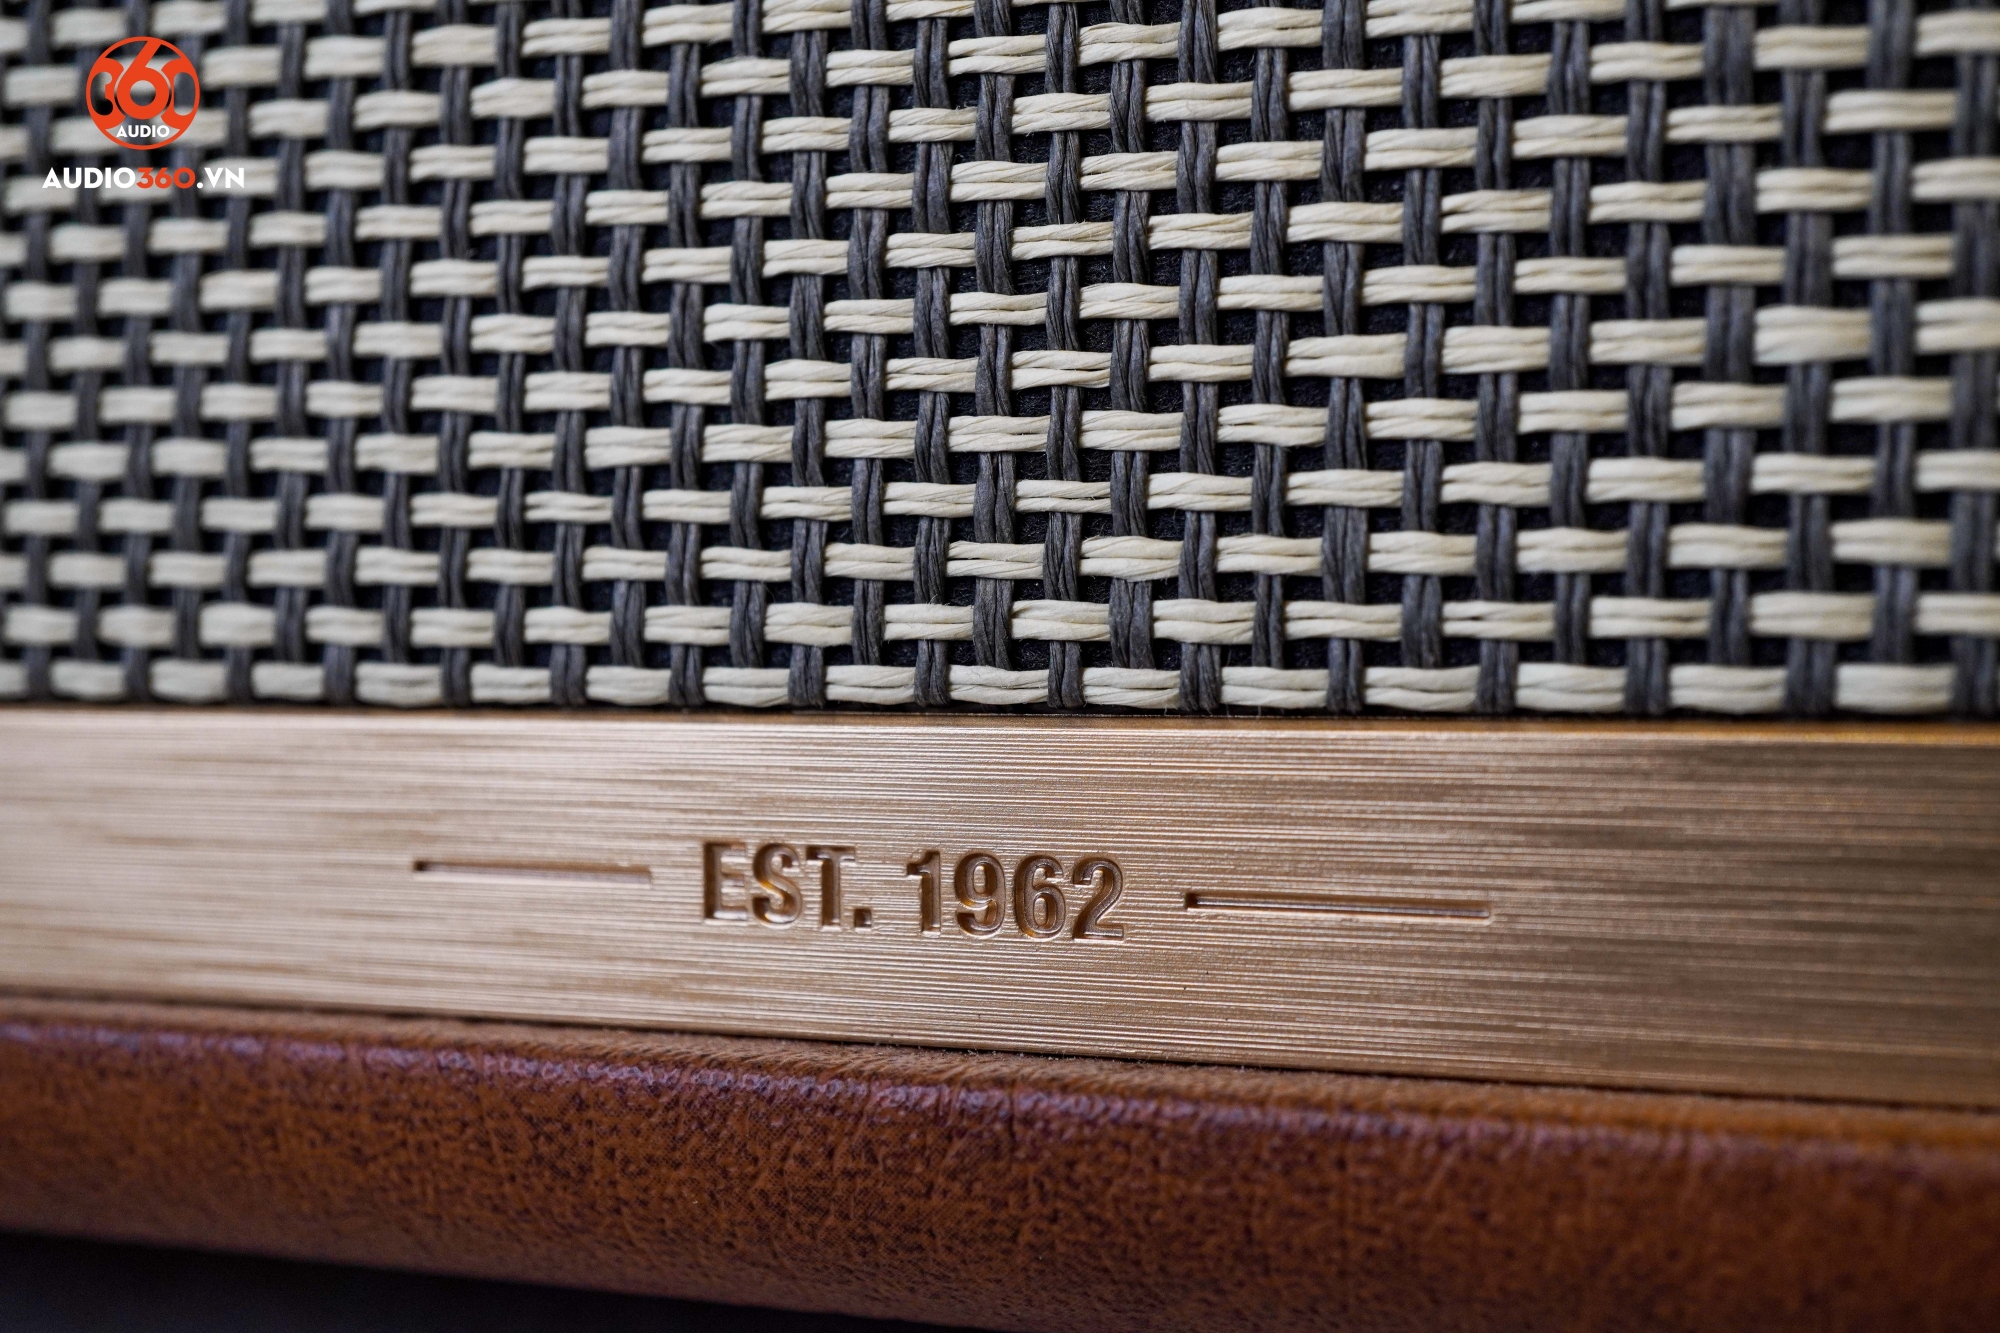 Marshall Woburn II khẳng định thương hiệu về thiết bị âm thanh thương hiệu trên 50 năm.